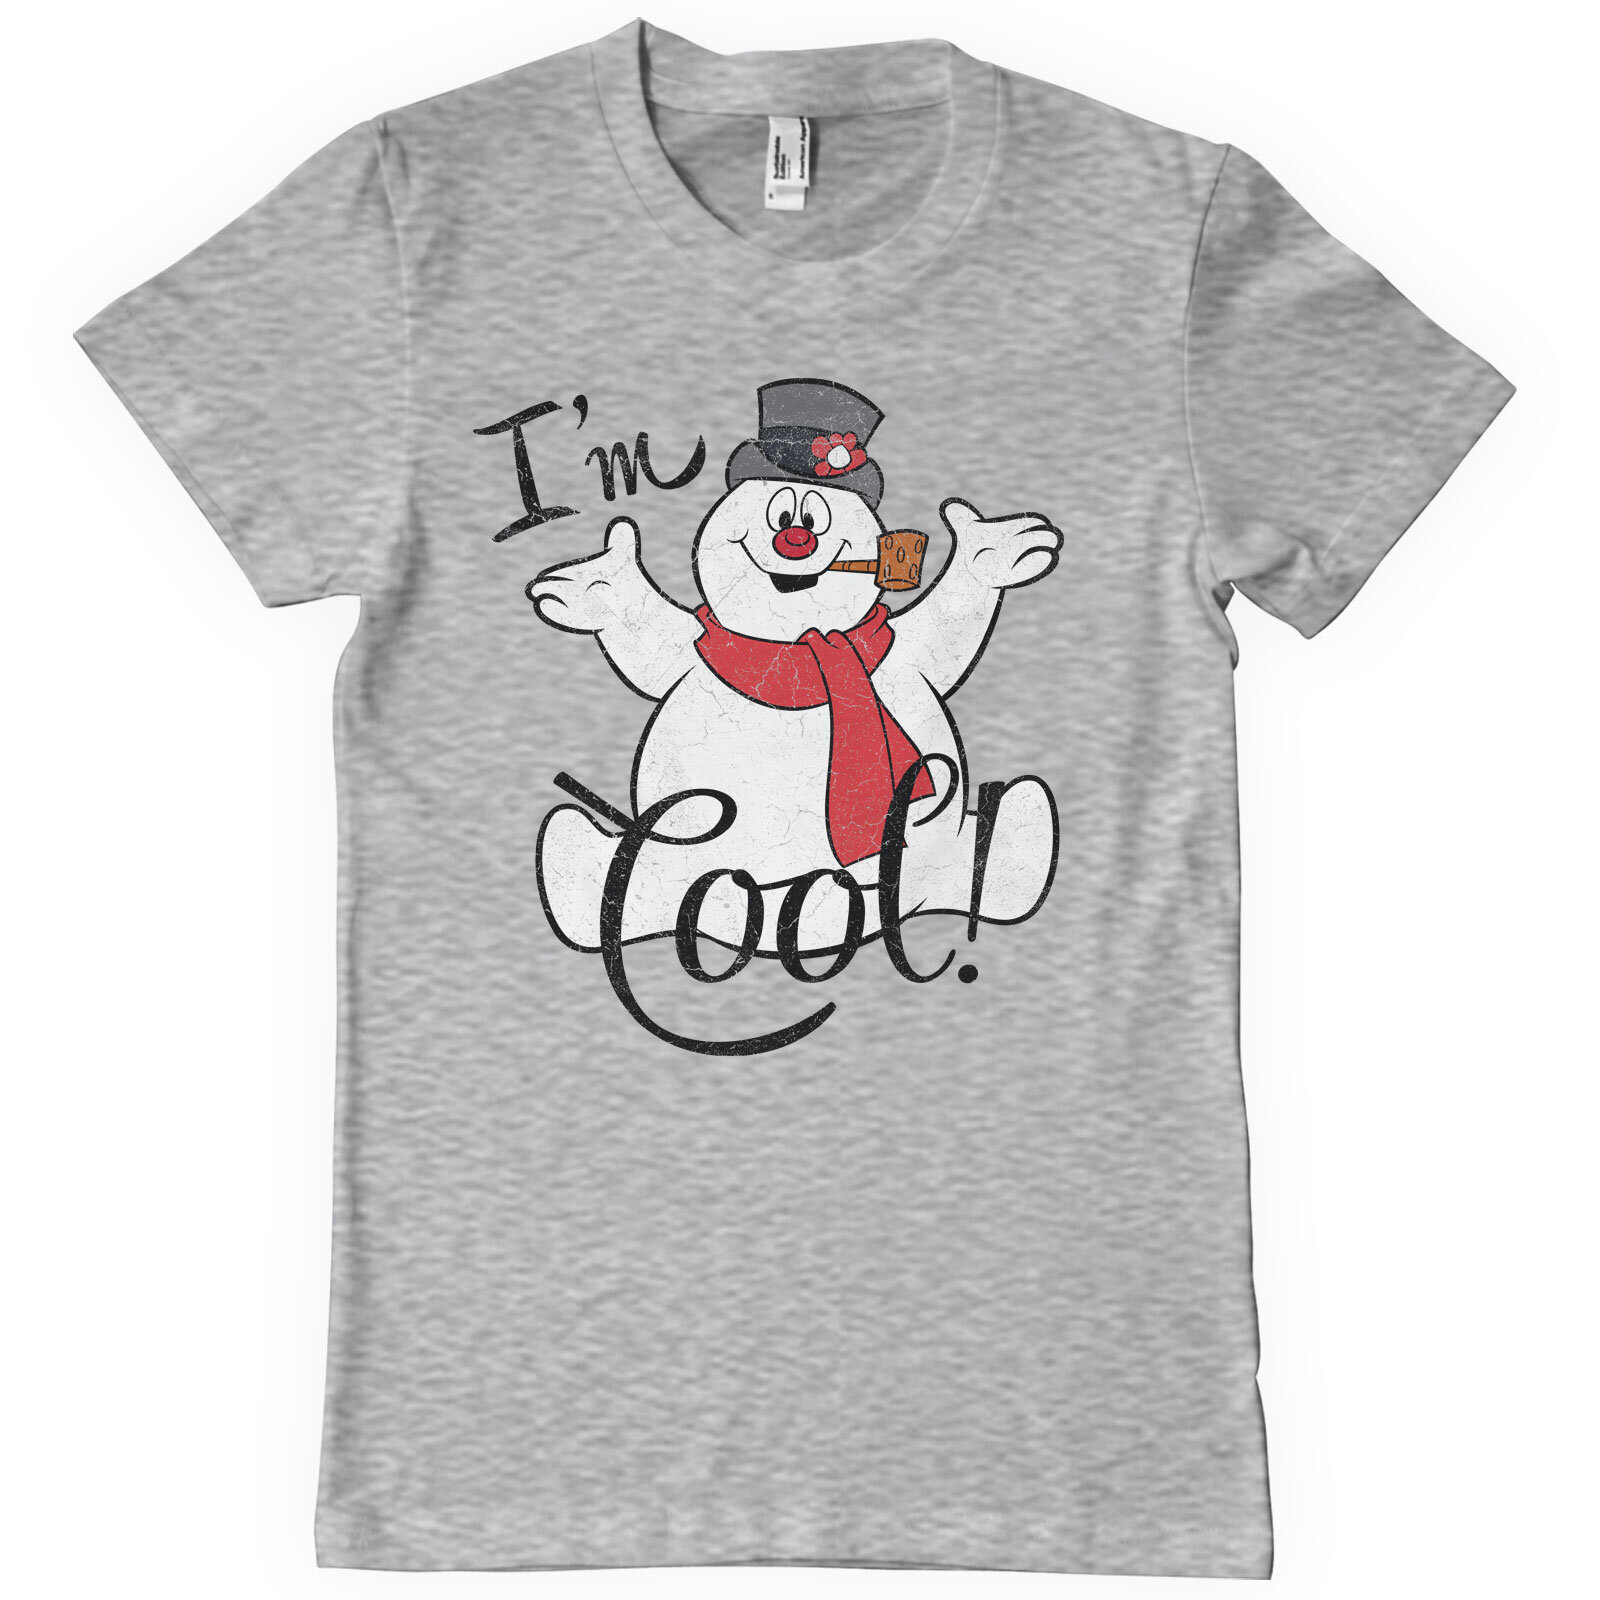 I'm Cool T-Shirt